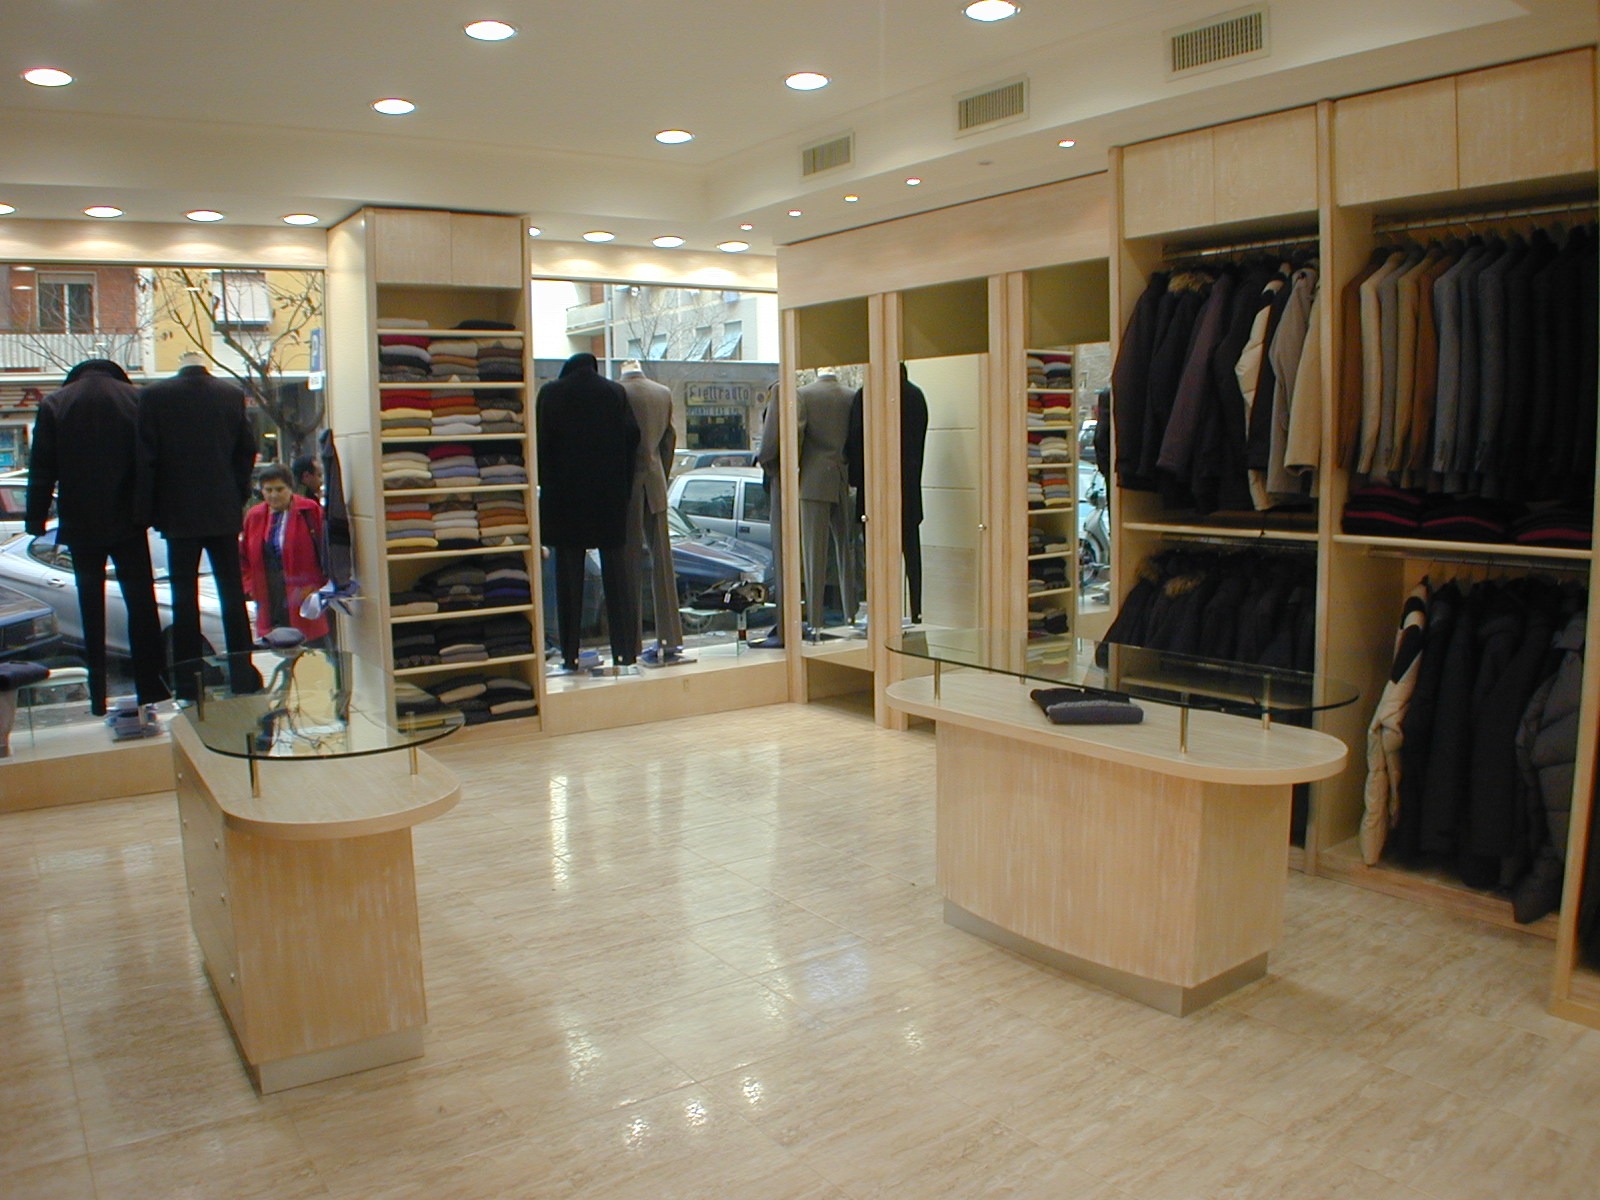 arredamenti-negozi-abbigliamento-uomo